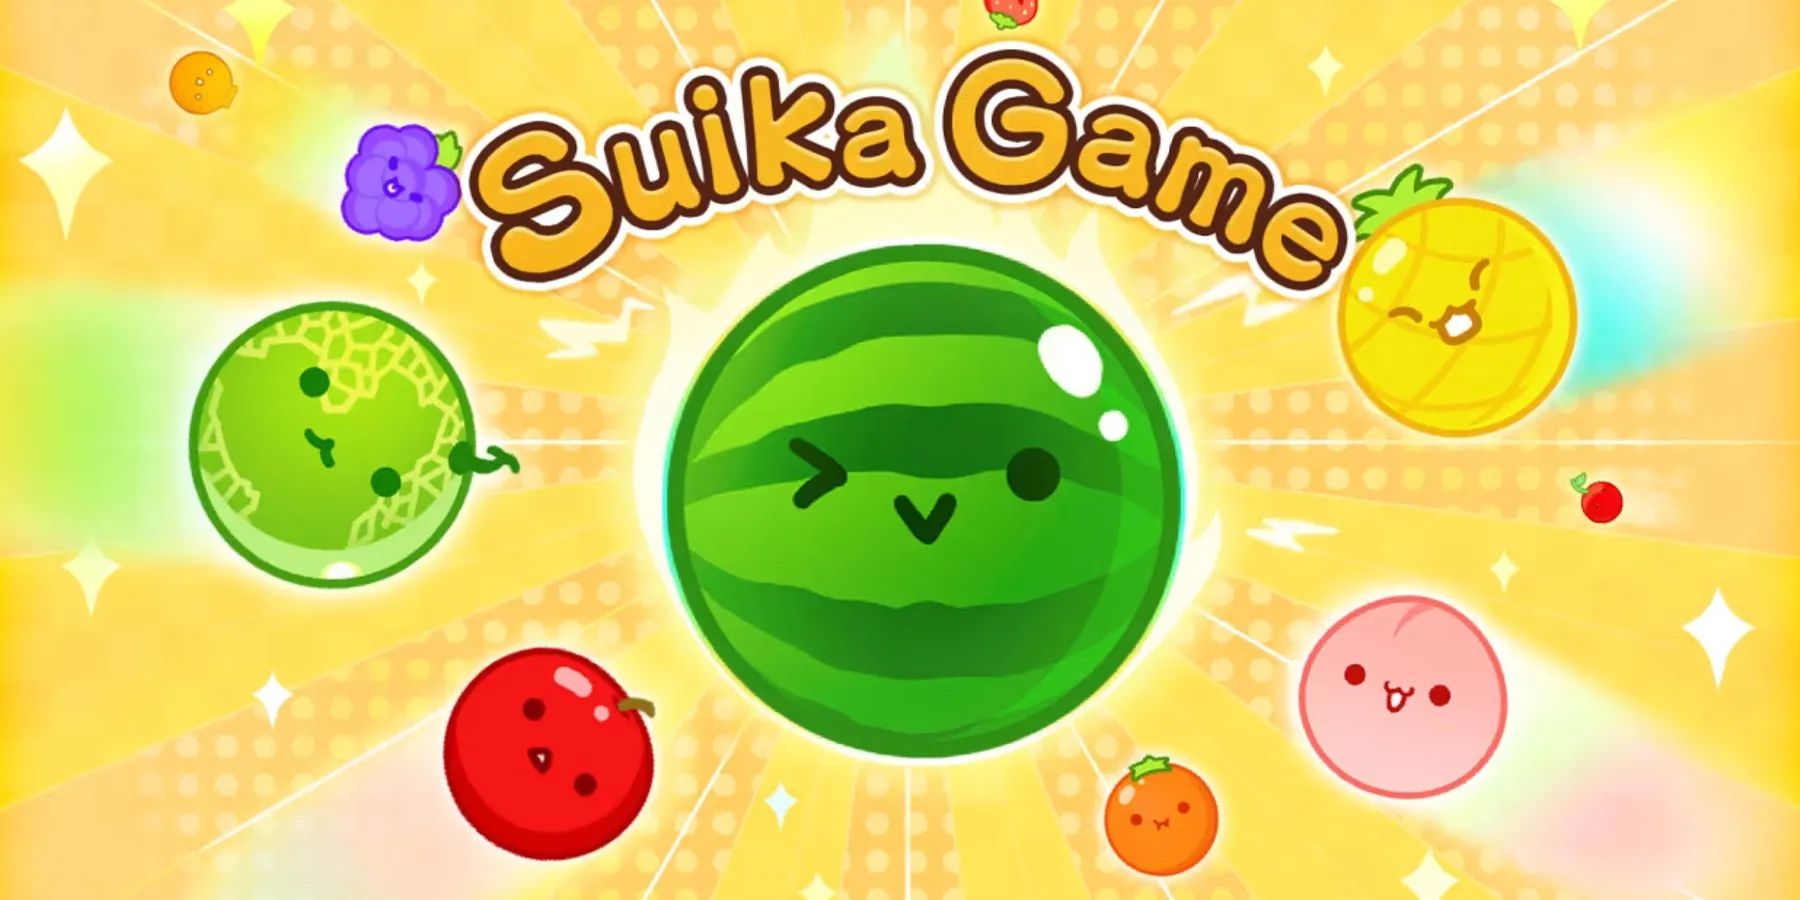 Suika Game promo art